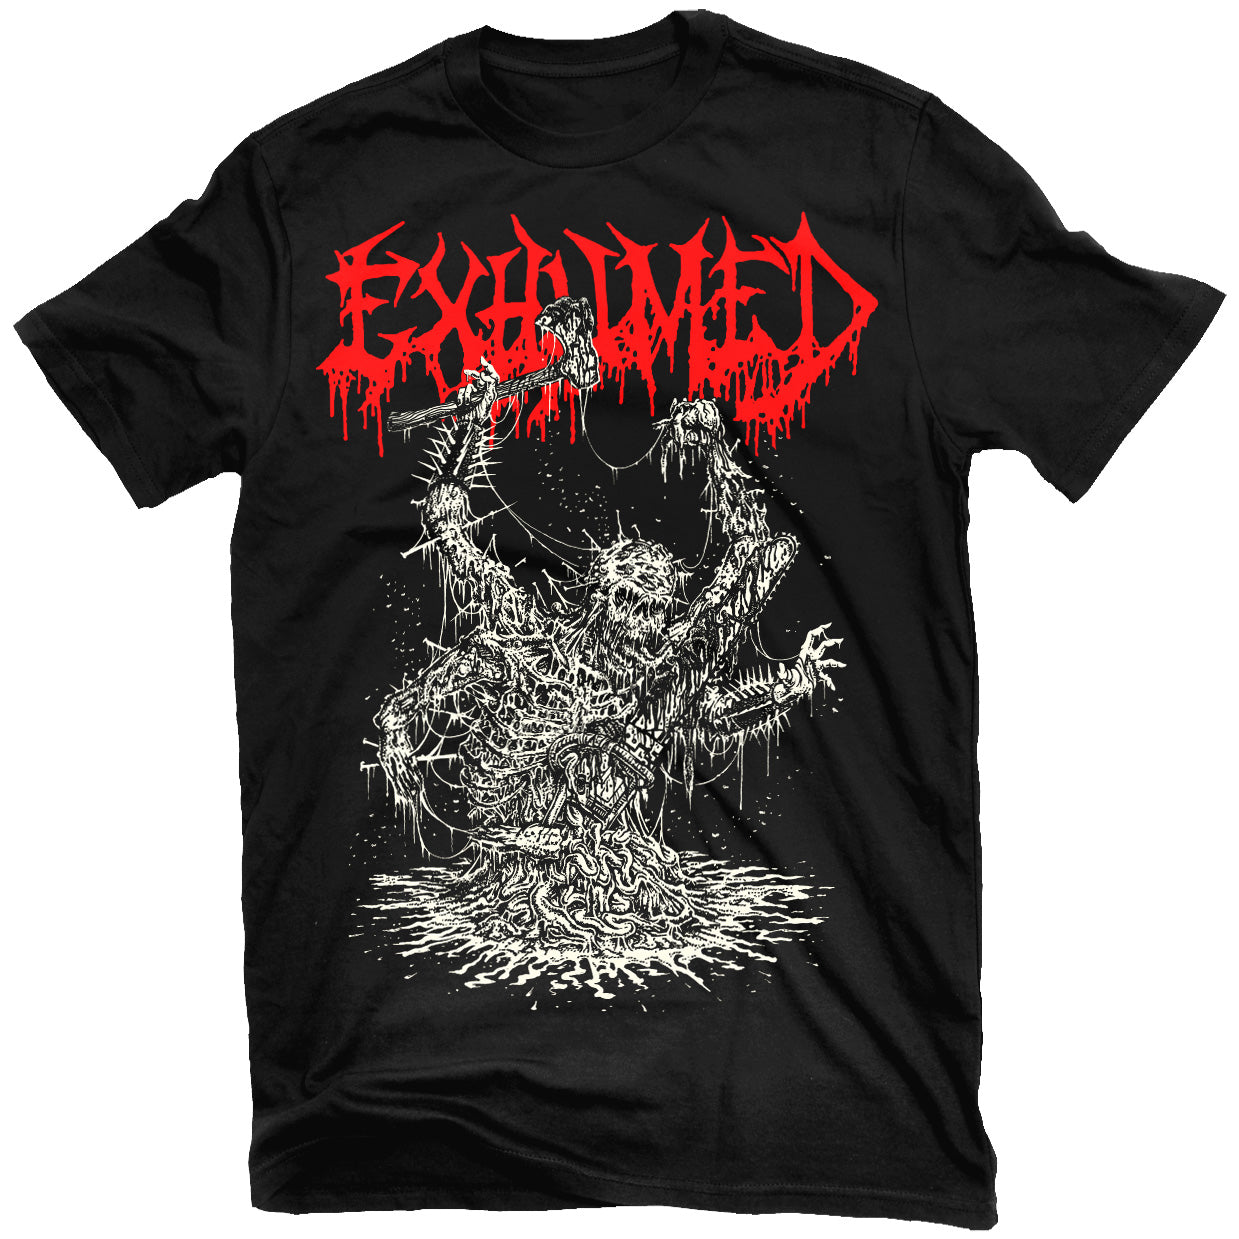 Exhumed "Gore Metal Necrospective" T-Shirt